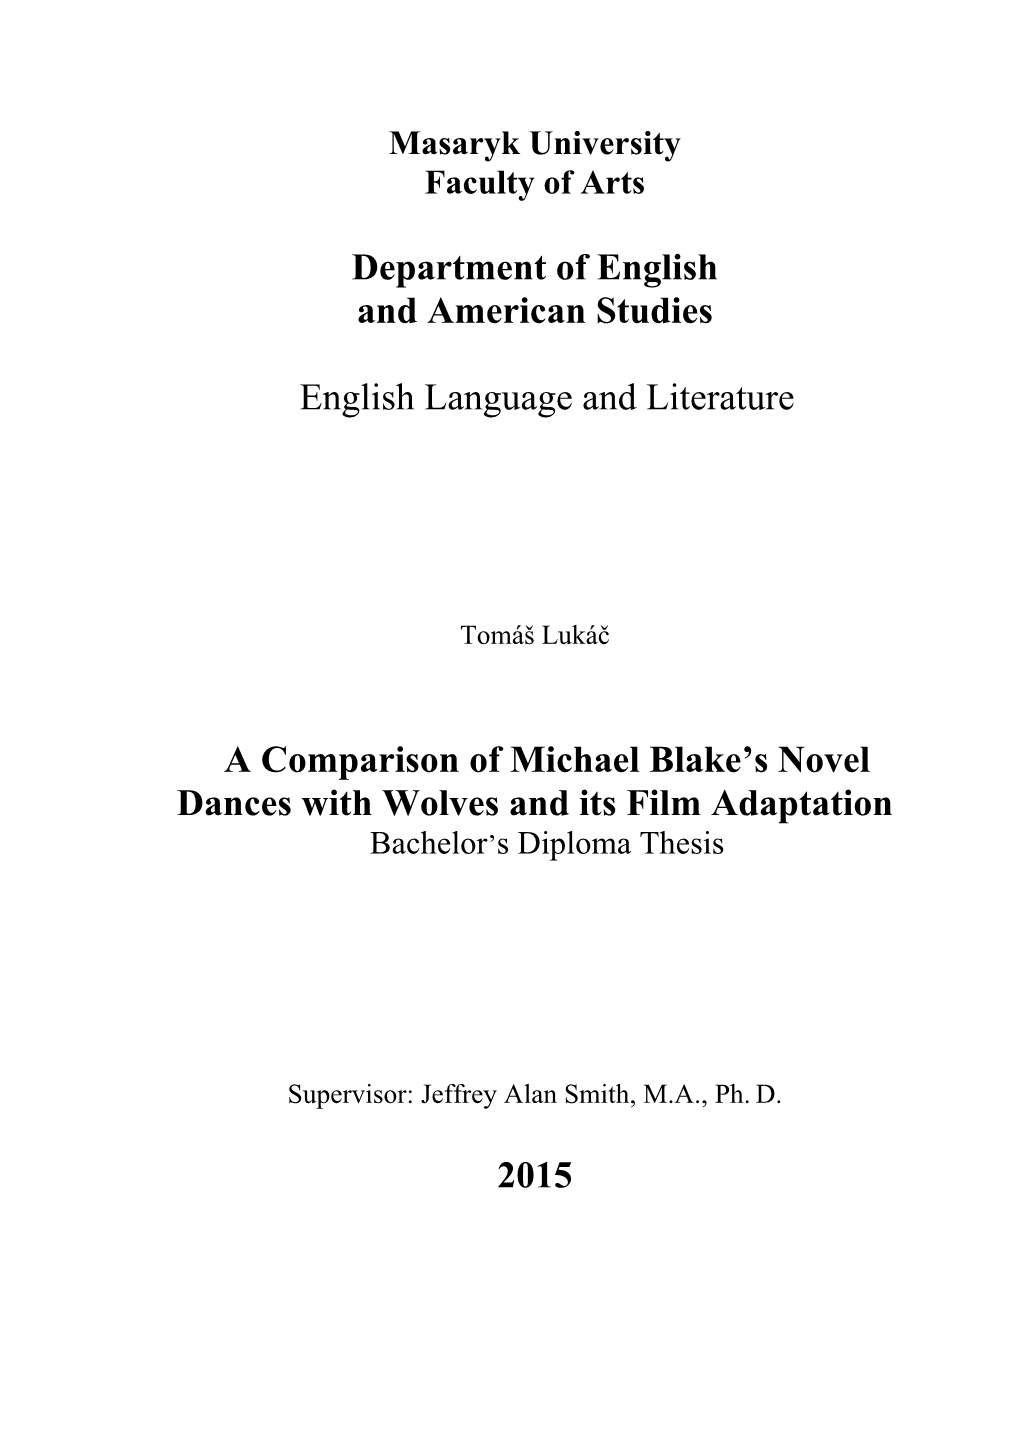 A Comparison of Michael Blake's Novel Dances With